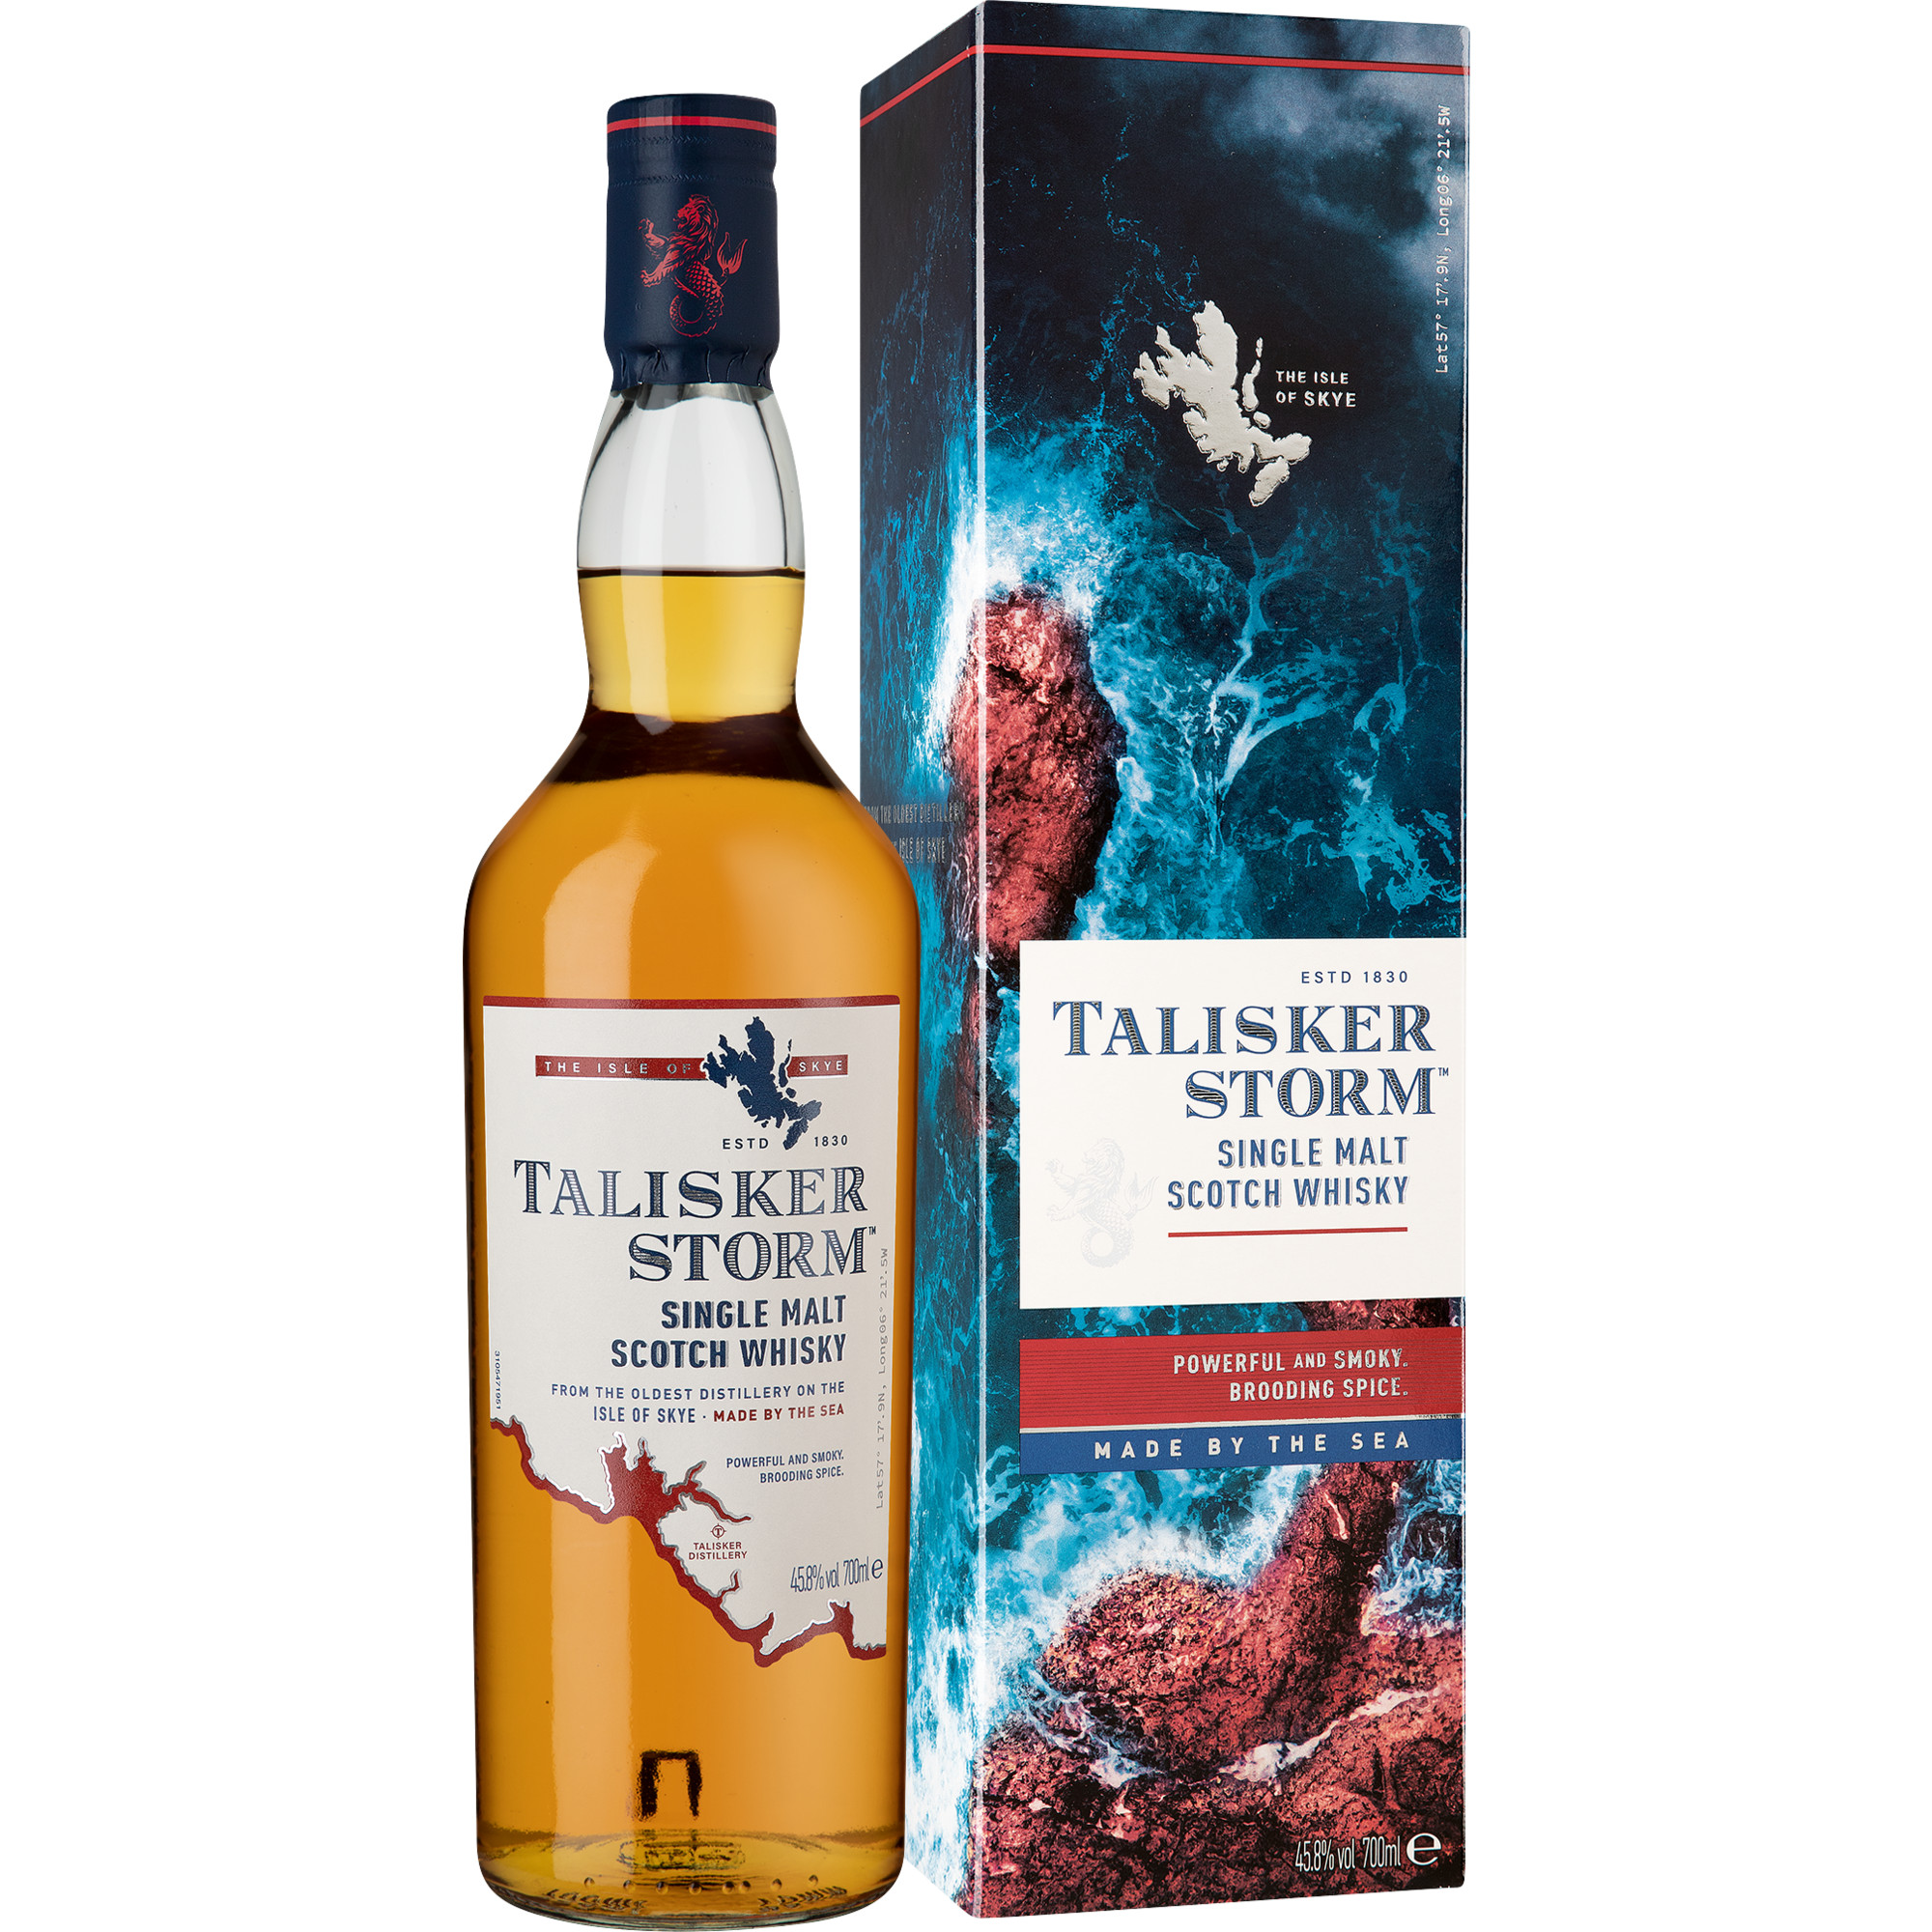 Talisker Storm Isle of Skye Single Malt Whisky, Scotch, 0,7 L, 45,8% Vol., Schottland, Spirituosen The Talisker Distillery Carbost, Isle of Skye, IV47 8SR, Scotland Hawesko DE